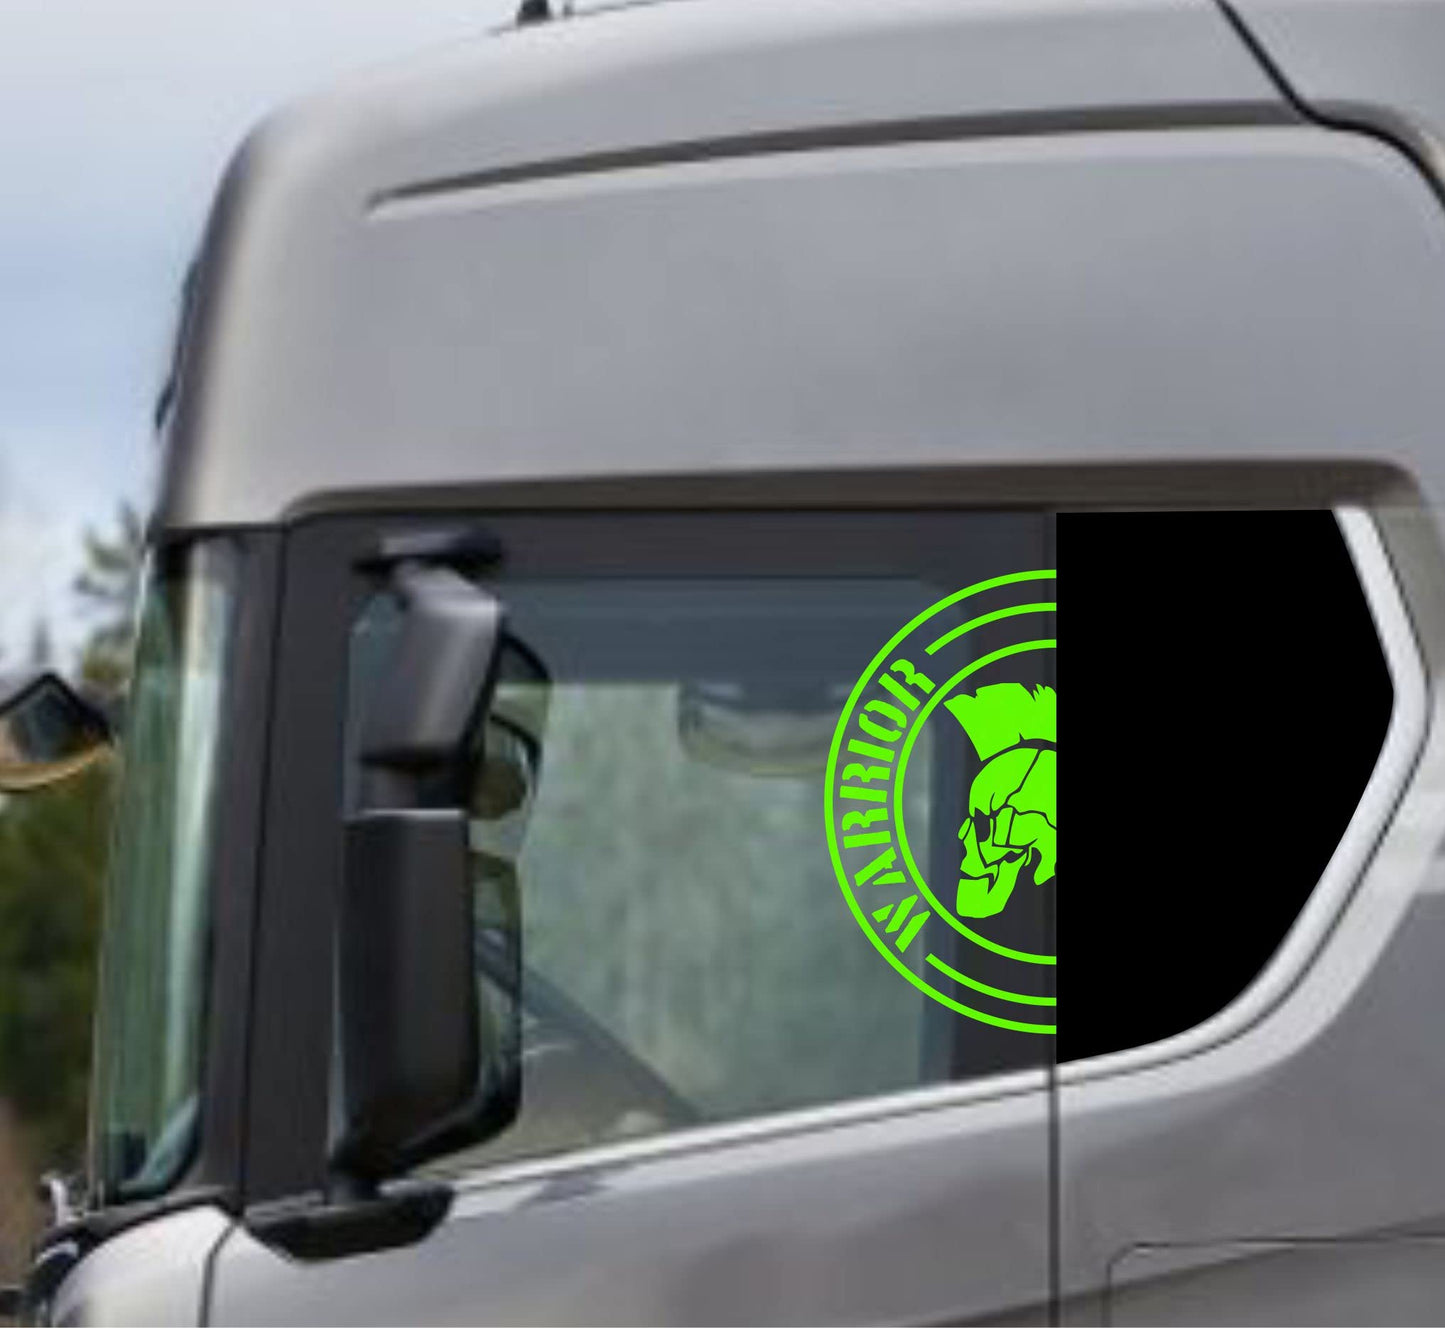 DualColorStampe Adesivi Compatibili con Scania Daf Iveco Man Camion accessori camion stickers camion finestrino WARRIOR COD.0302 a €21.99 solo da DualColorStampe